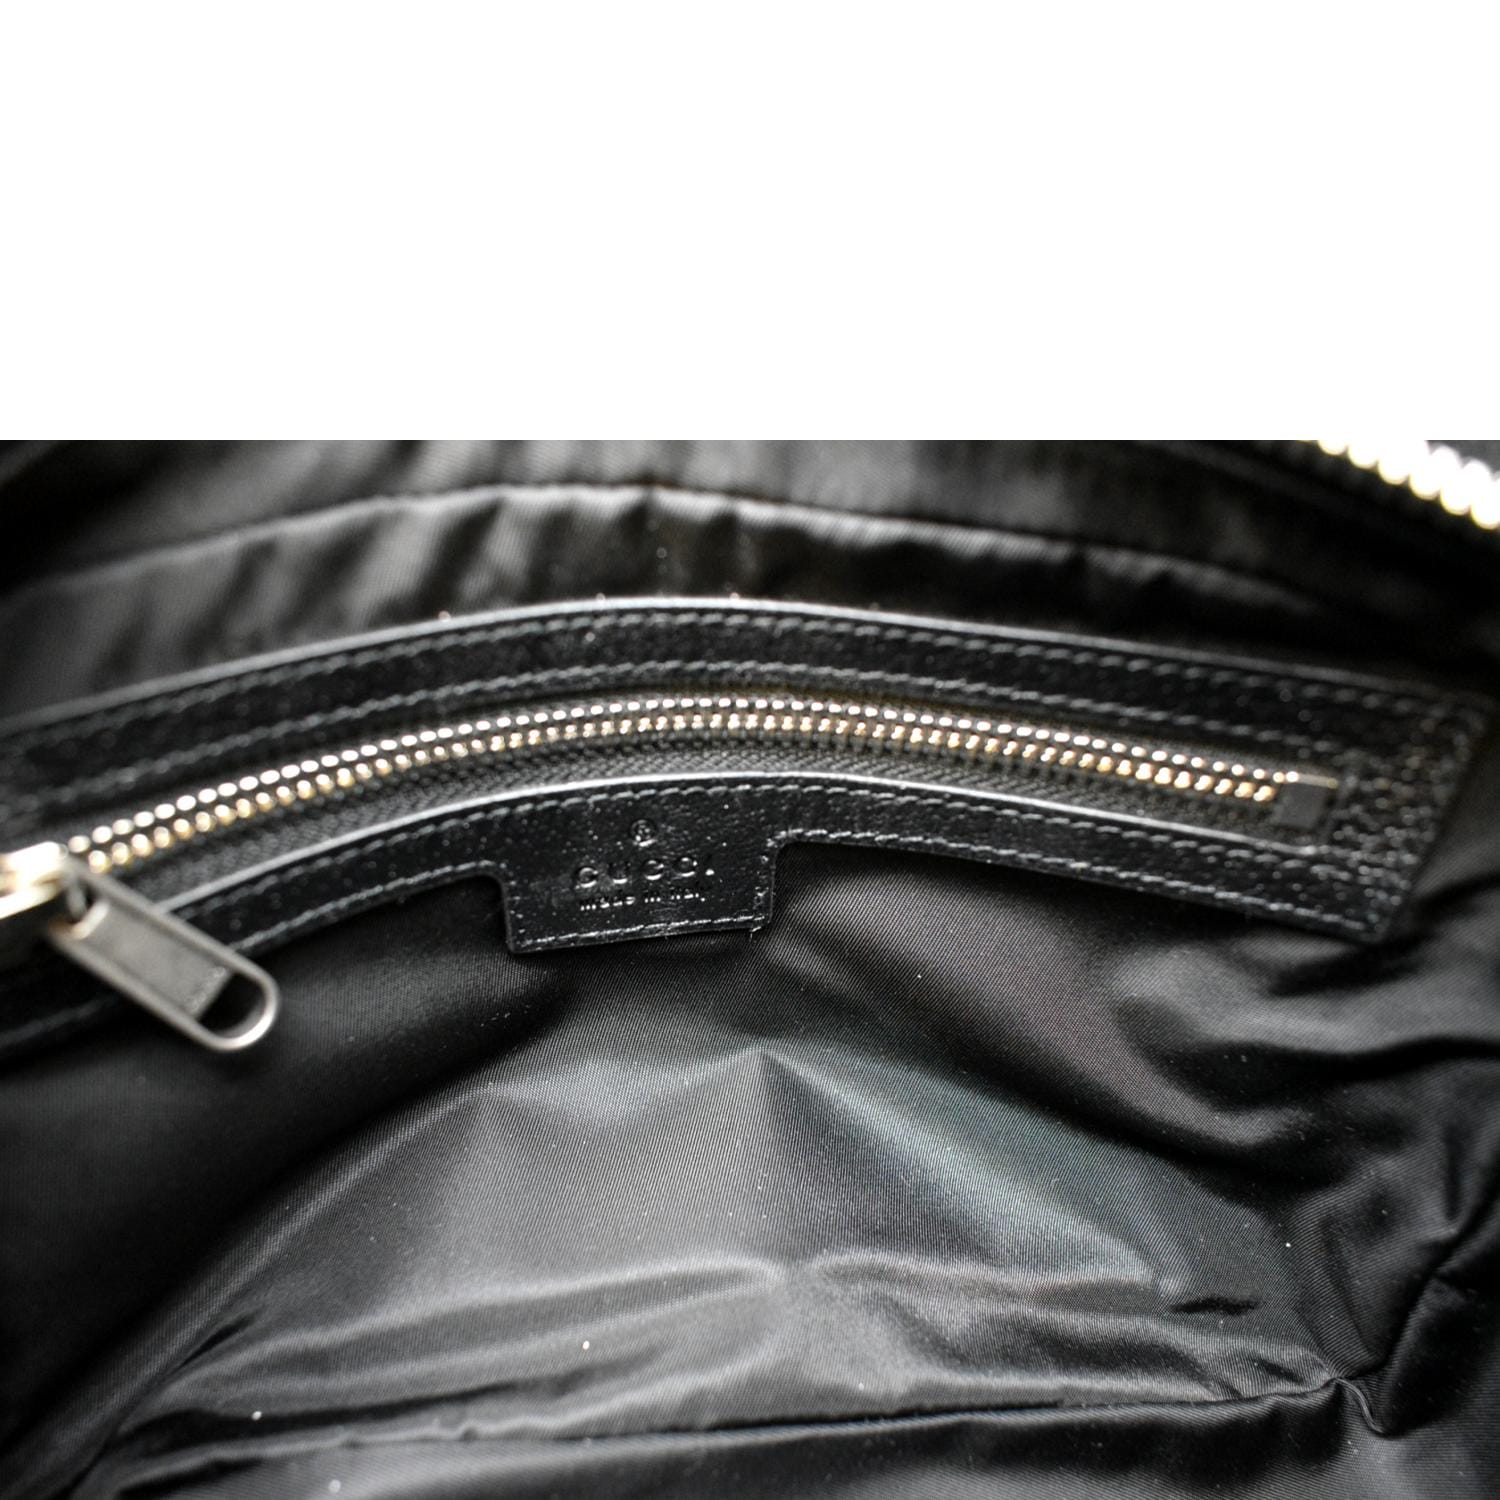 Gucci Blue Off The Grid Belt Bag – BlackSkinny